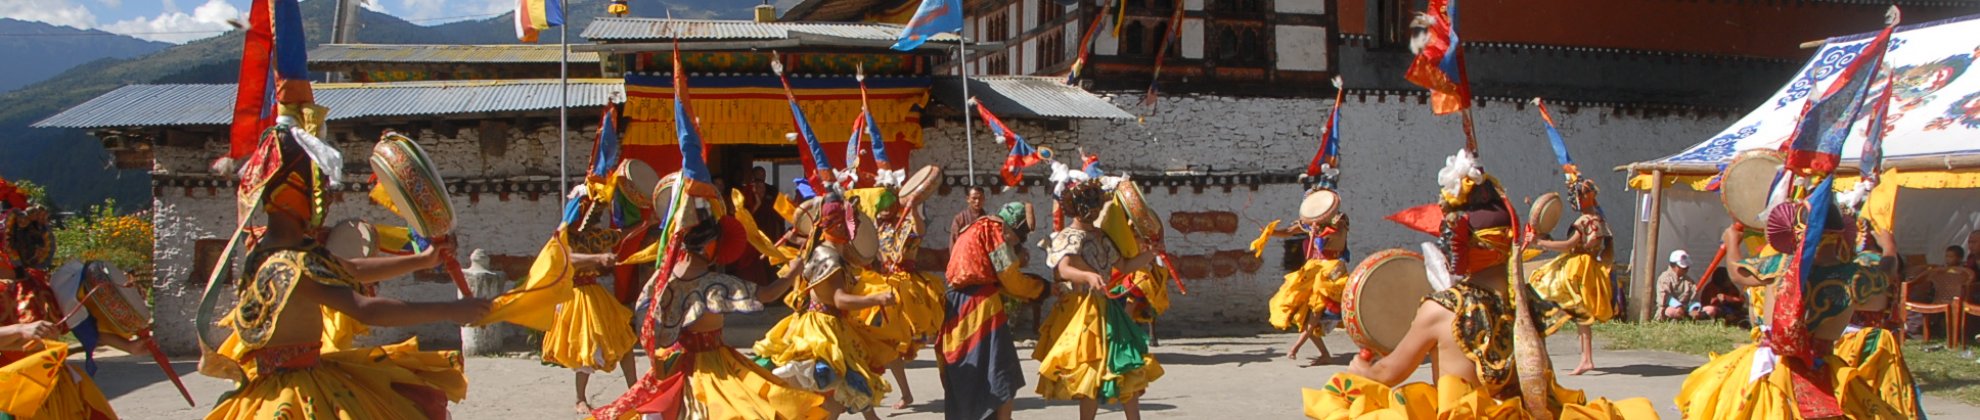 Bhutan Himalaya Festival Fest Trachten Tanz Bumthang